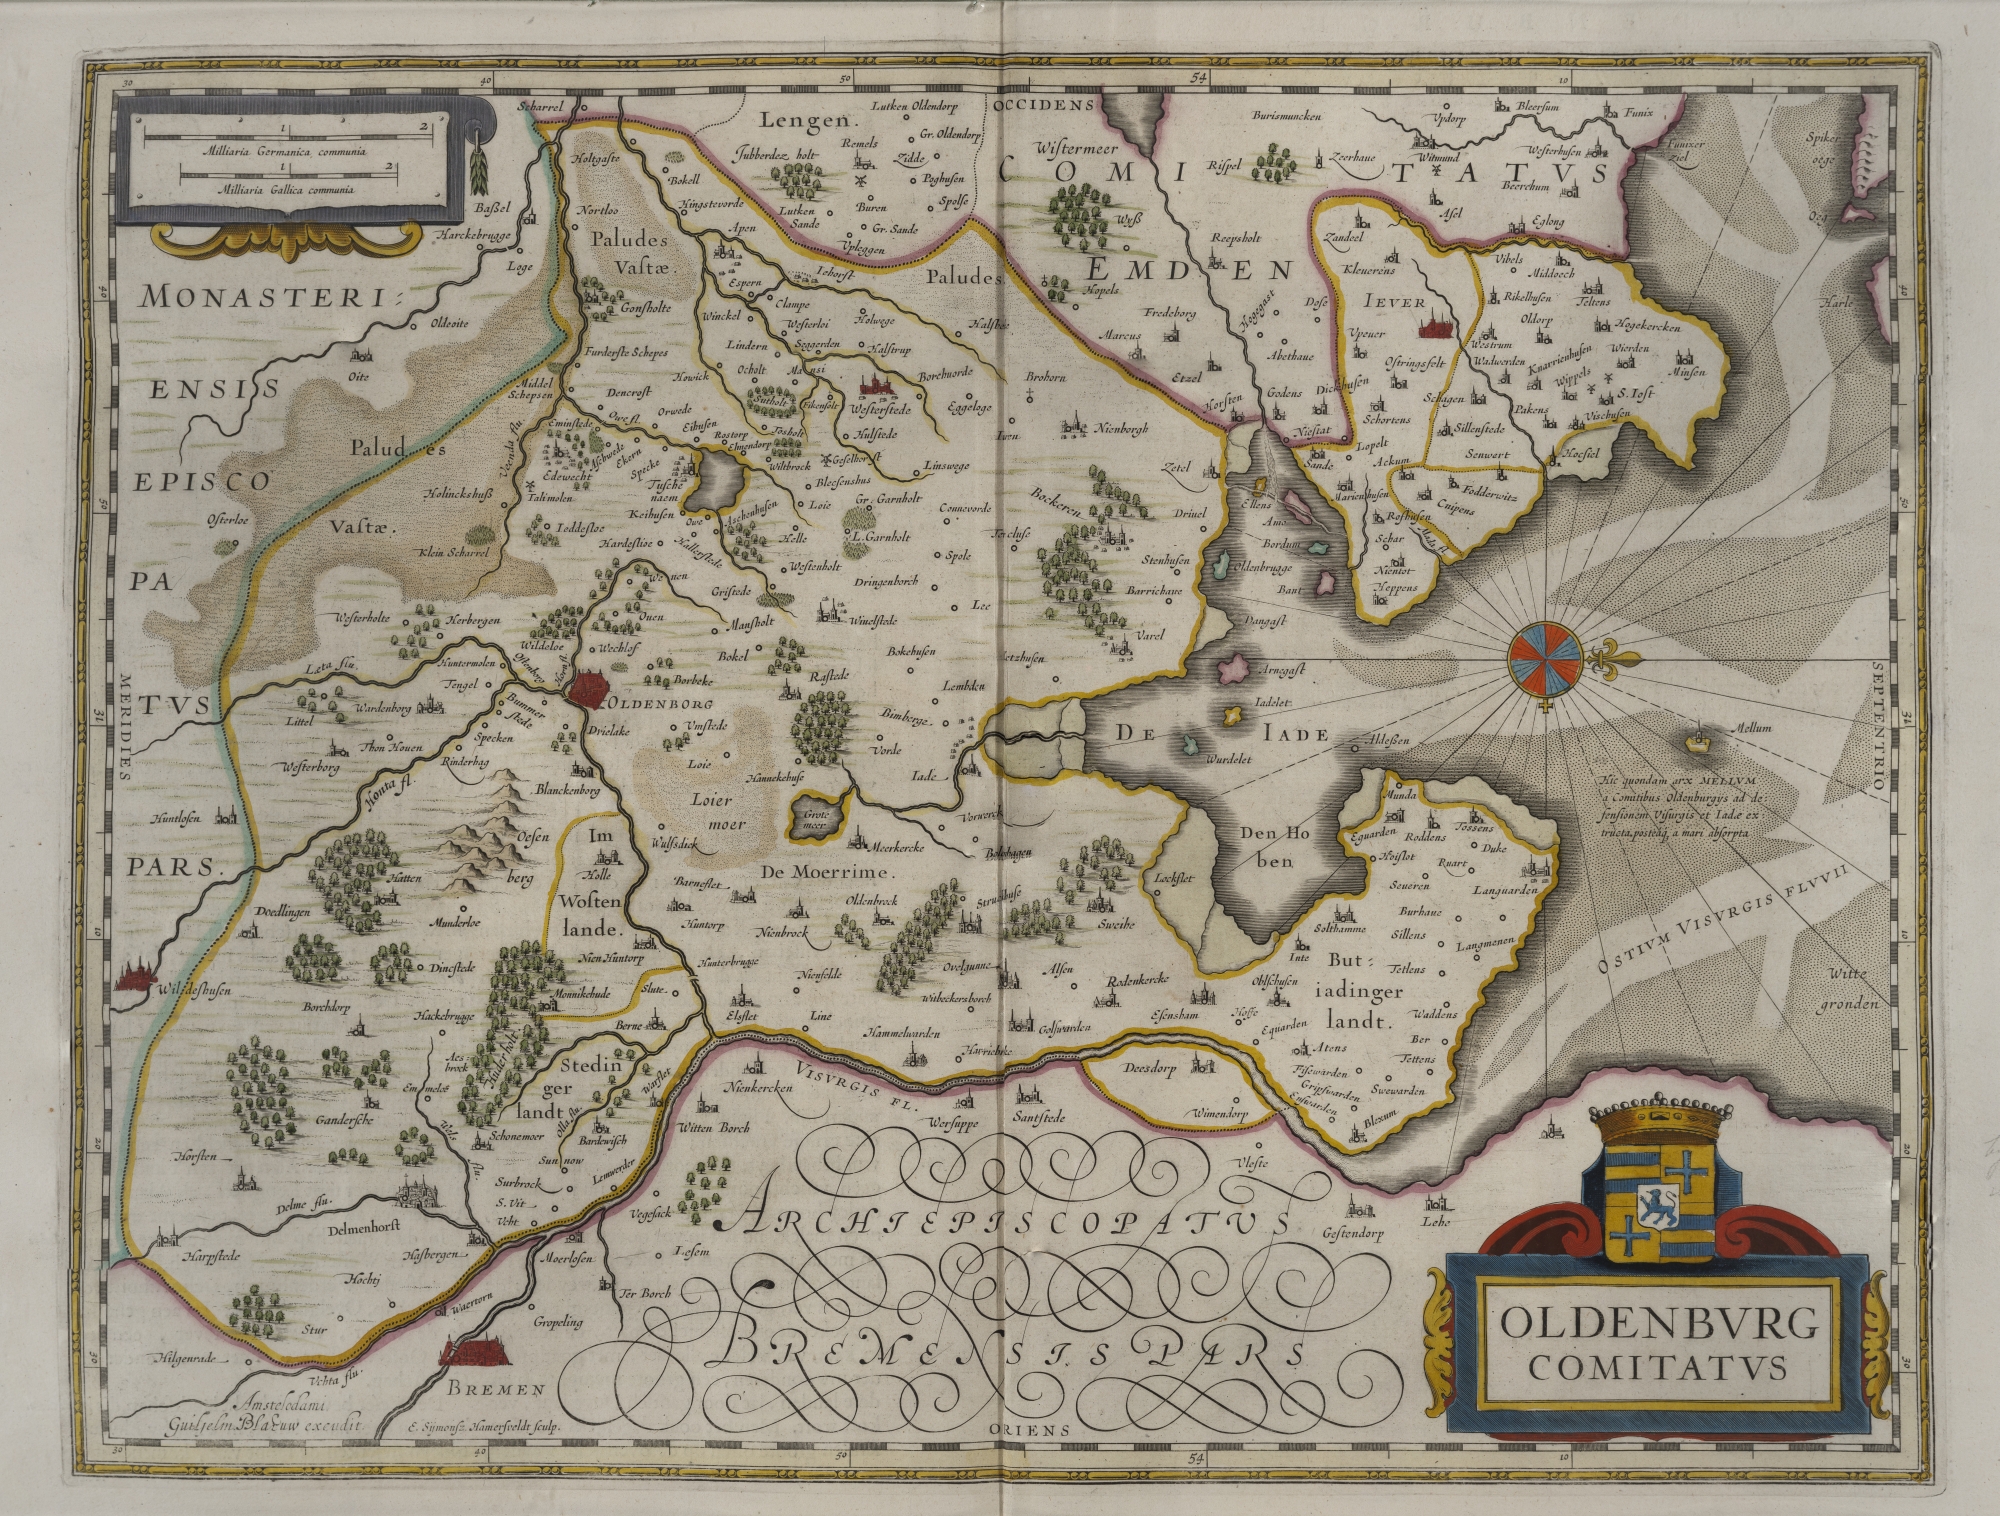 K06. Kaart van het graafschap Oldenburg uit: Blaeu, Grooten atlas, oft werelt-beschryving, in welcke ’t aertryck, de zee en hemel wordt vertoont en beschreven (Amsterdam 1664) (ex. UBG)K06. Map of the County of Oldenburg from: Blaeu, Grooten atlas, oft werelt-beschryving, in welcke ’t aertryck, de zee en hemel wordt vertoont en beschreven (Amsterdam 1664) (copy UBG)K06. Karte der Grafschaft Oldenburg in: Blaeu, Grooten atlas, oft werelt-beschryving, in welcke ’t aertryck, de zee en hemel wordt vertoont en beschreven (Amsterdam 1664) (Exemplar UBG)